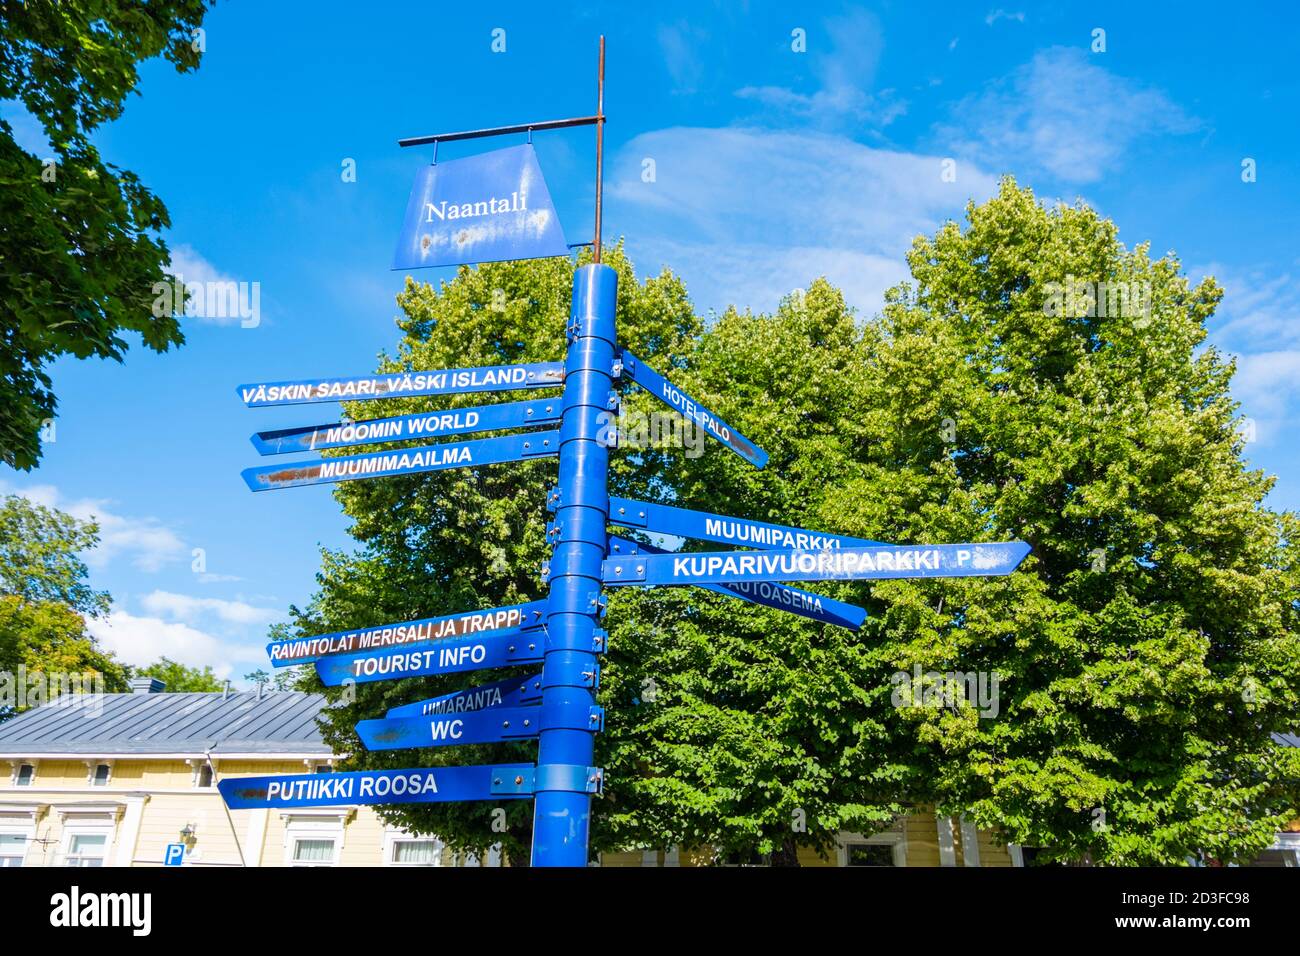 Direction sign for visitors, Itsenäisyyden puisto, Mannerheiminkatu, Naantali, Finland Stock Photo